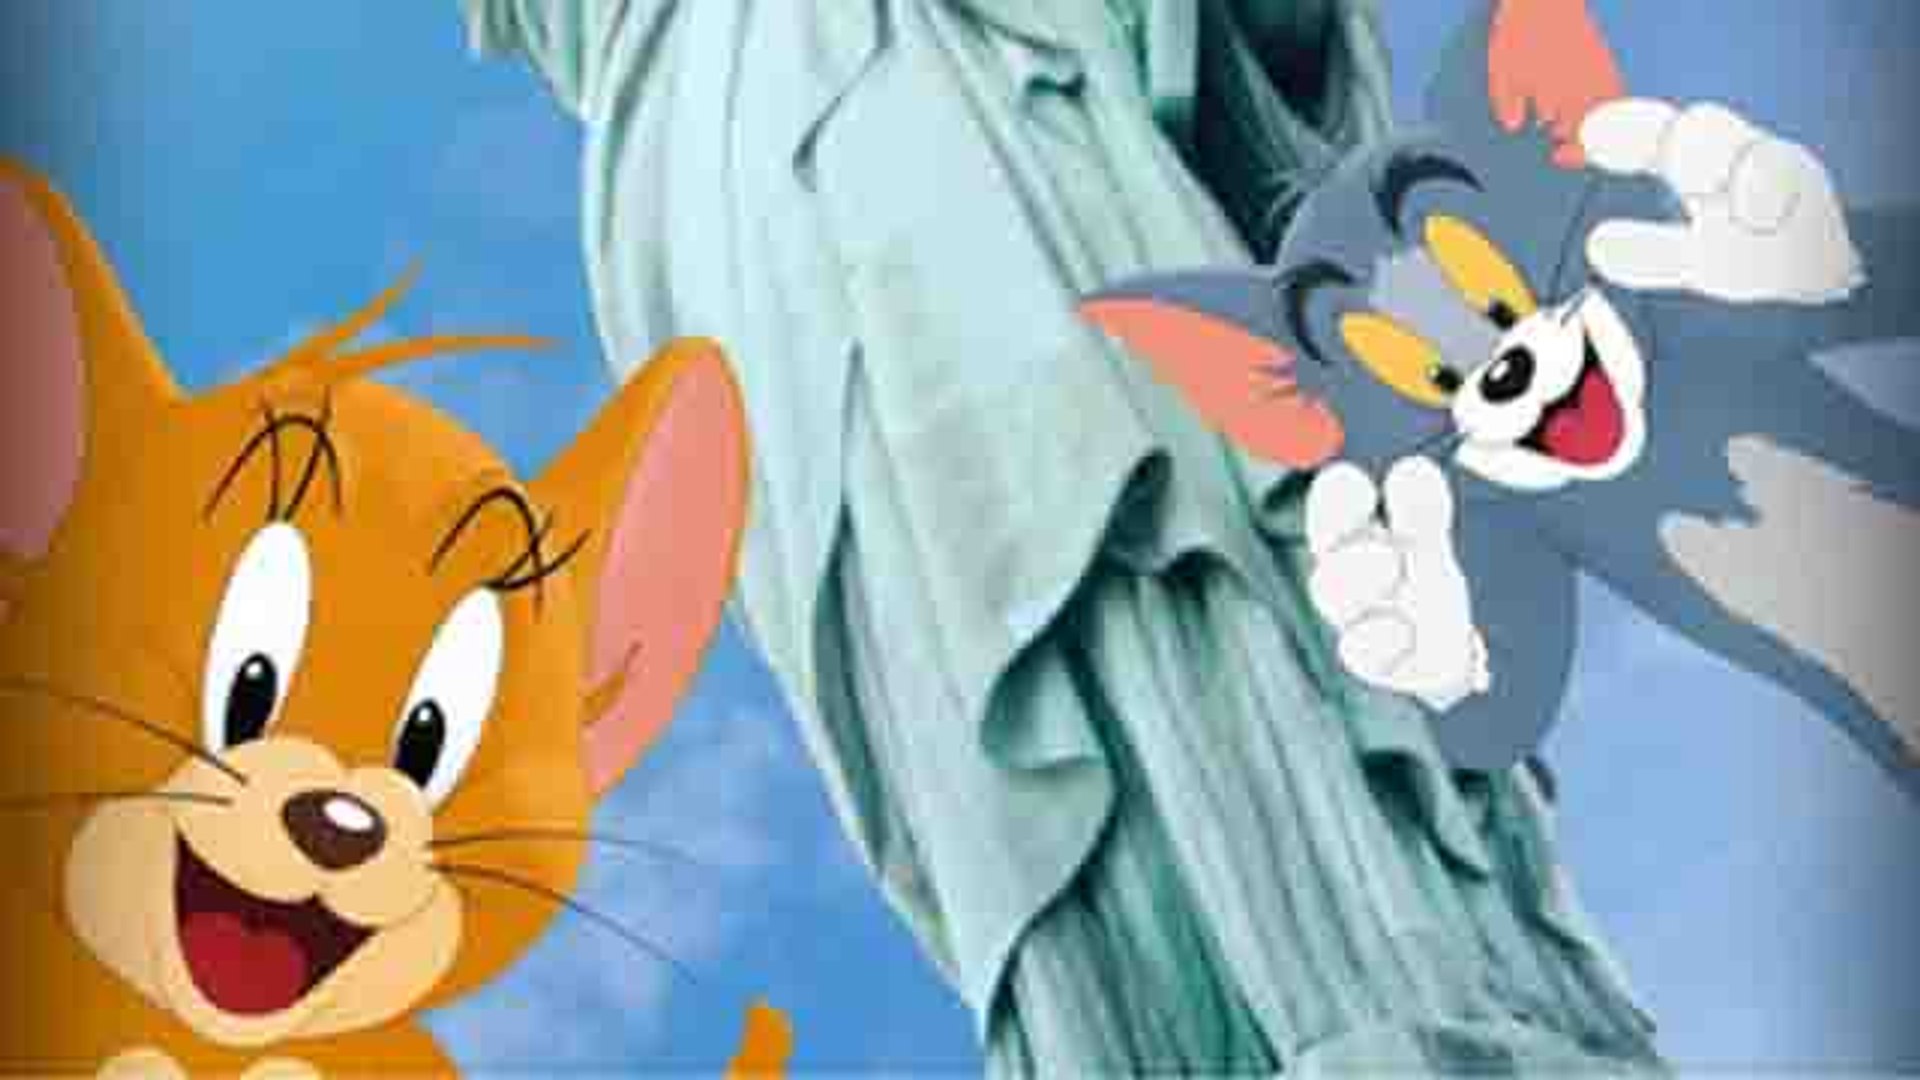 फि‍र लौट रहे हैं आपके चहेते Tom & Jerry, Trailor देख emotional हुए Fans|FilmiBeat